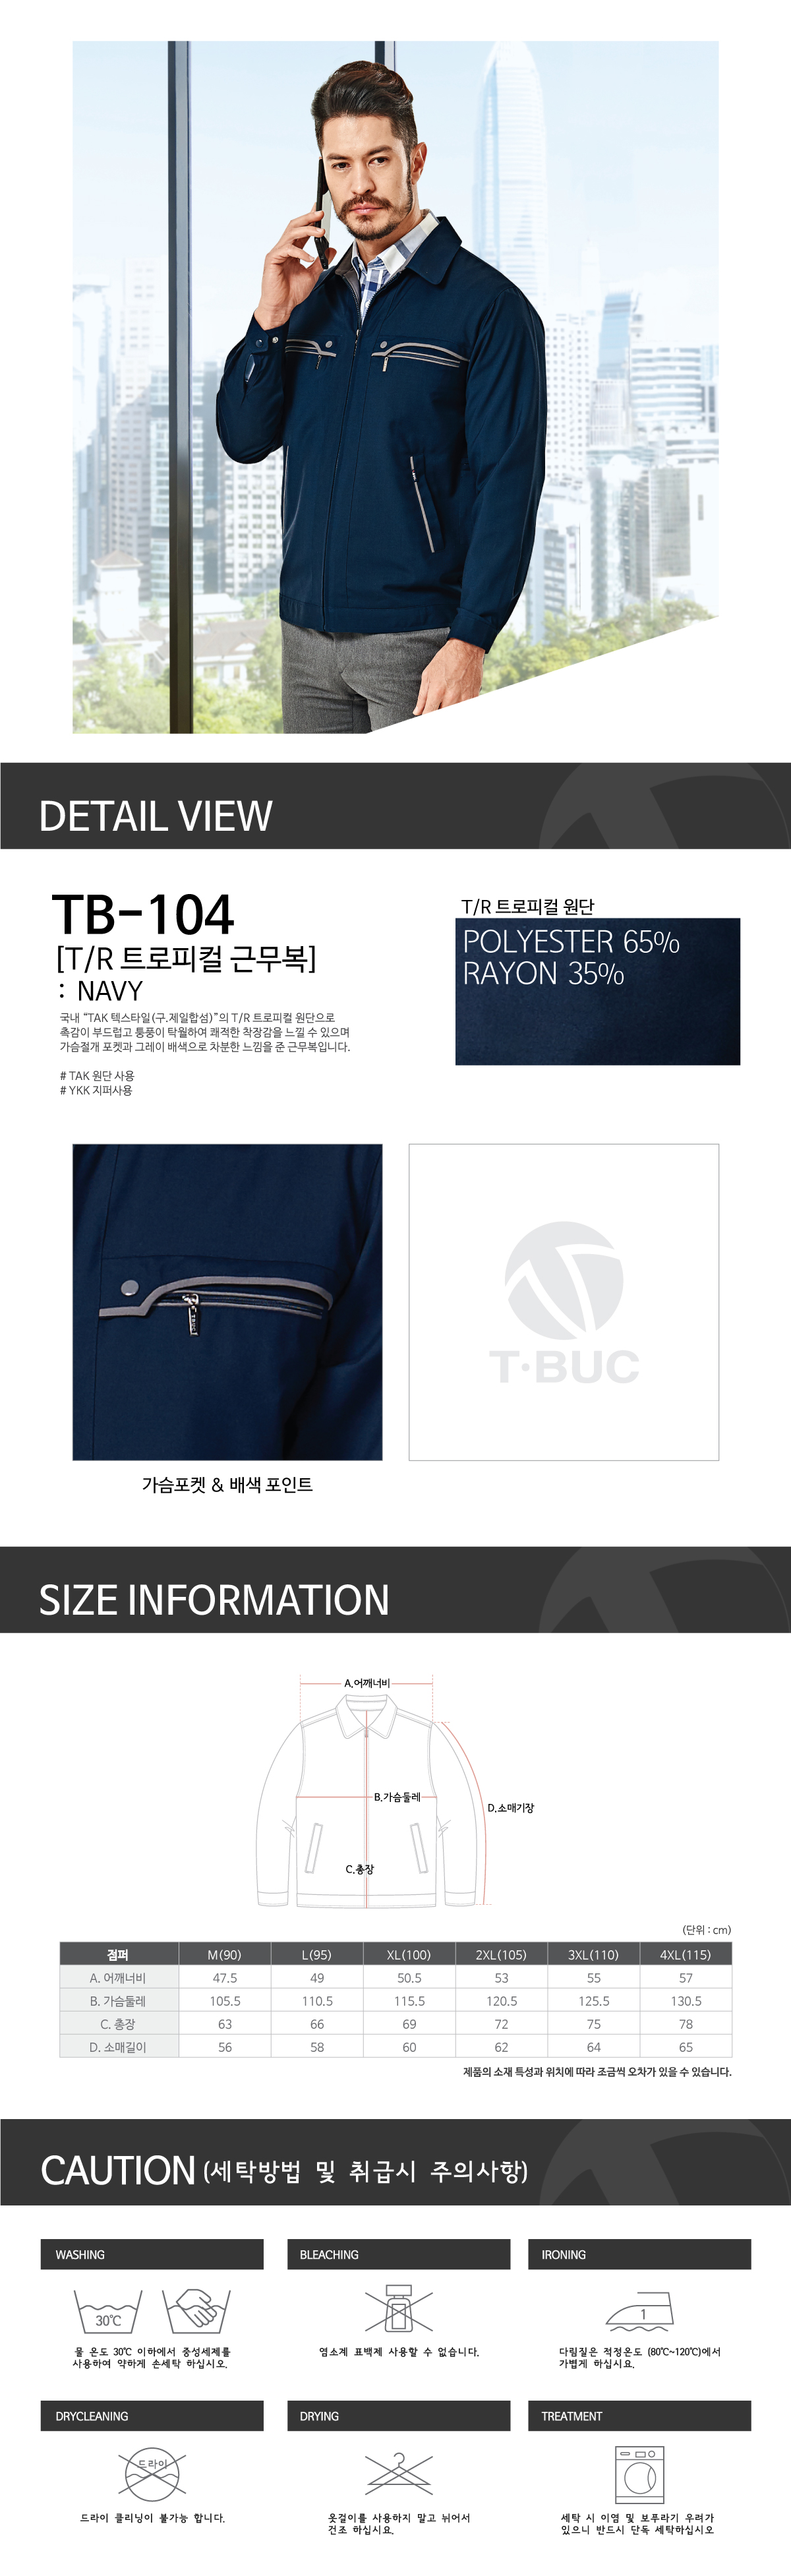 TB-104'-.jpg